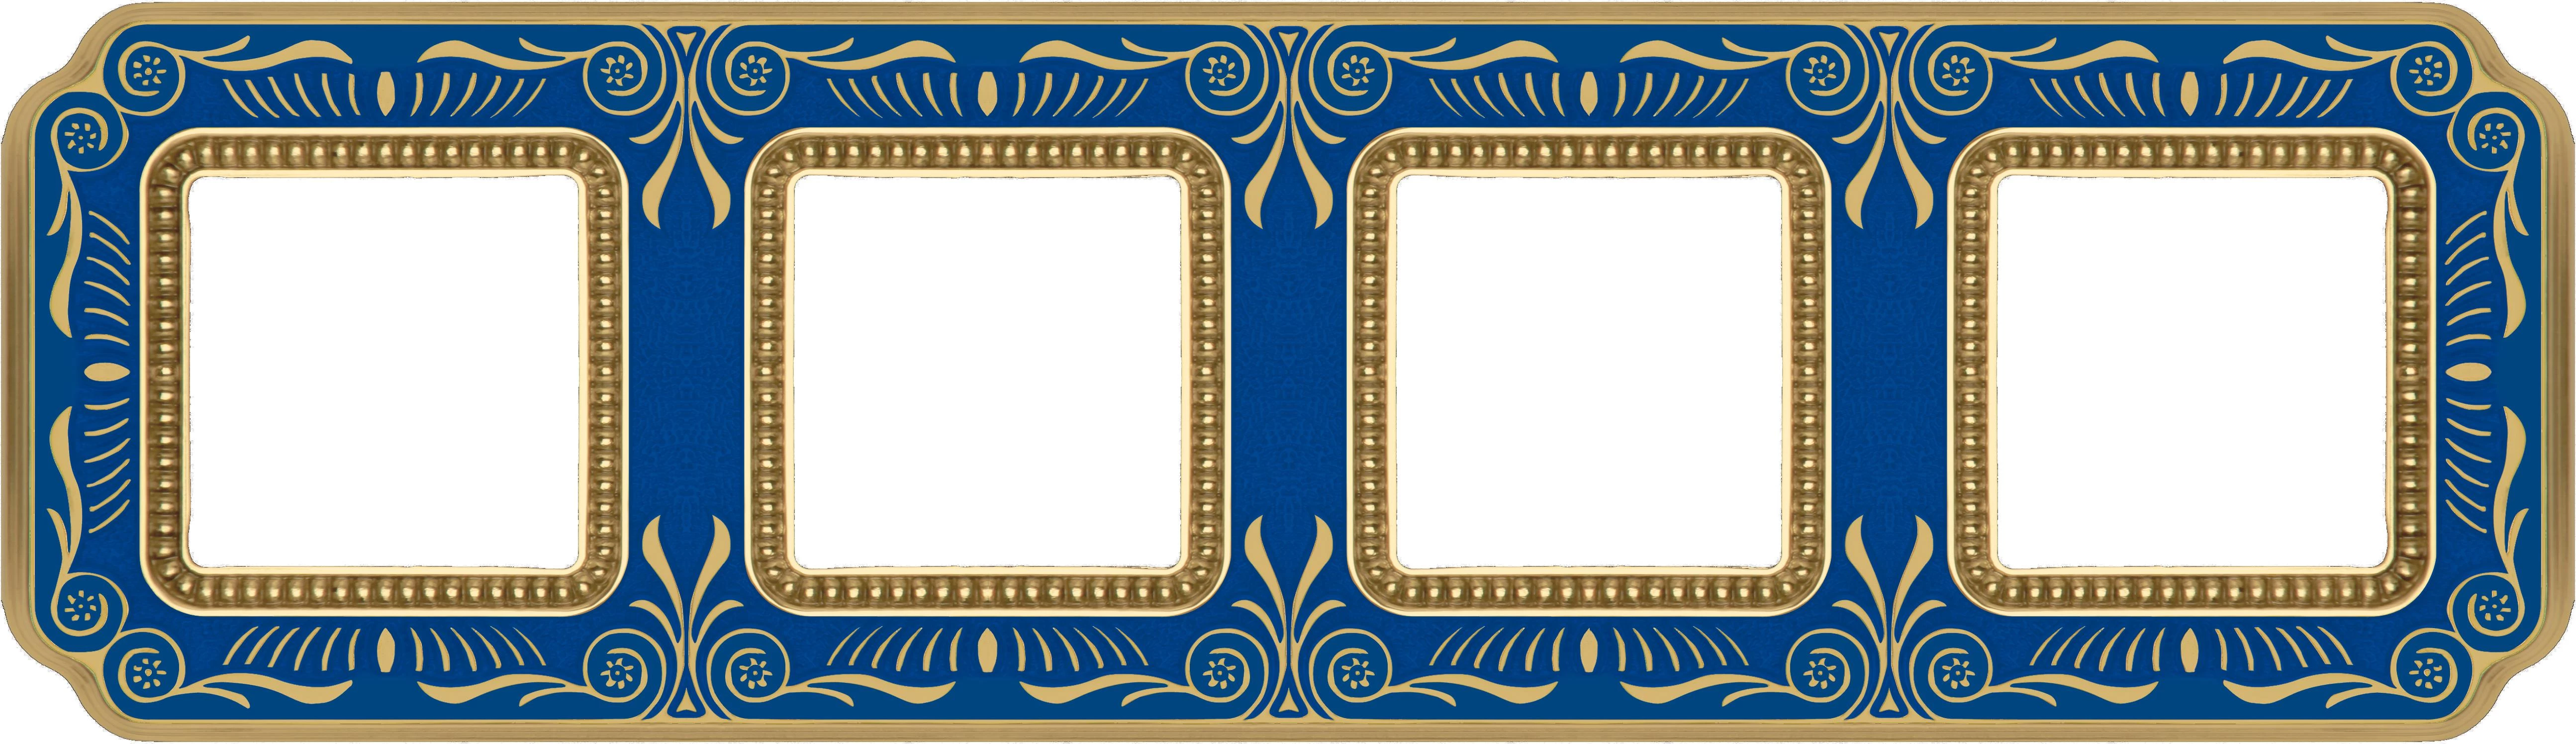  артикул FD01364AZEN название Рамка четверная, цвет Голубой сапфир, Firenze, Fede